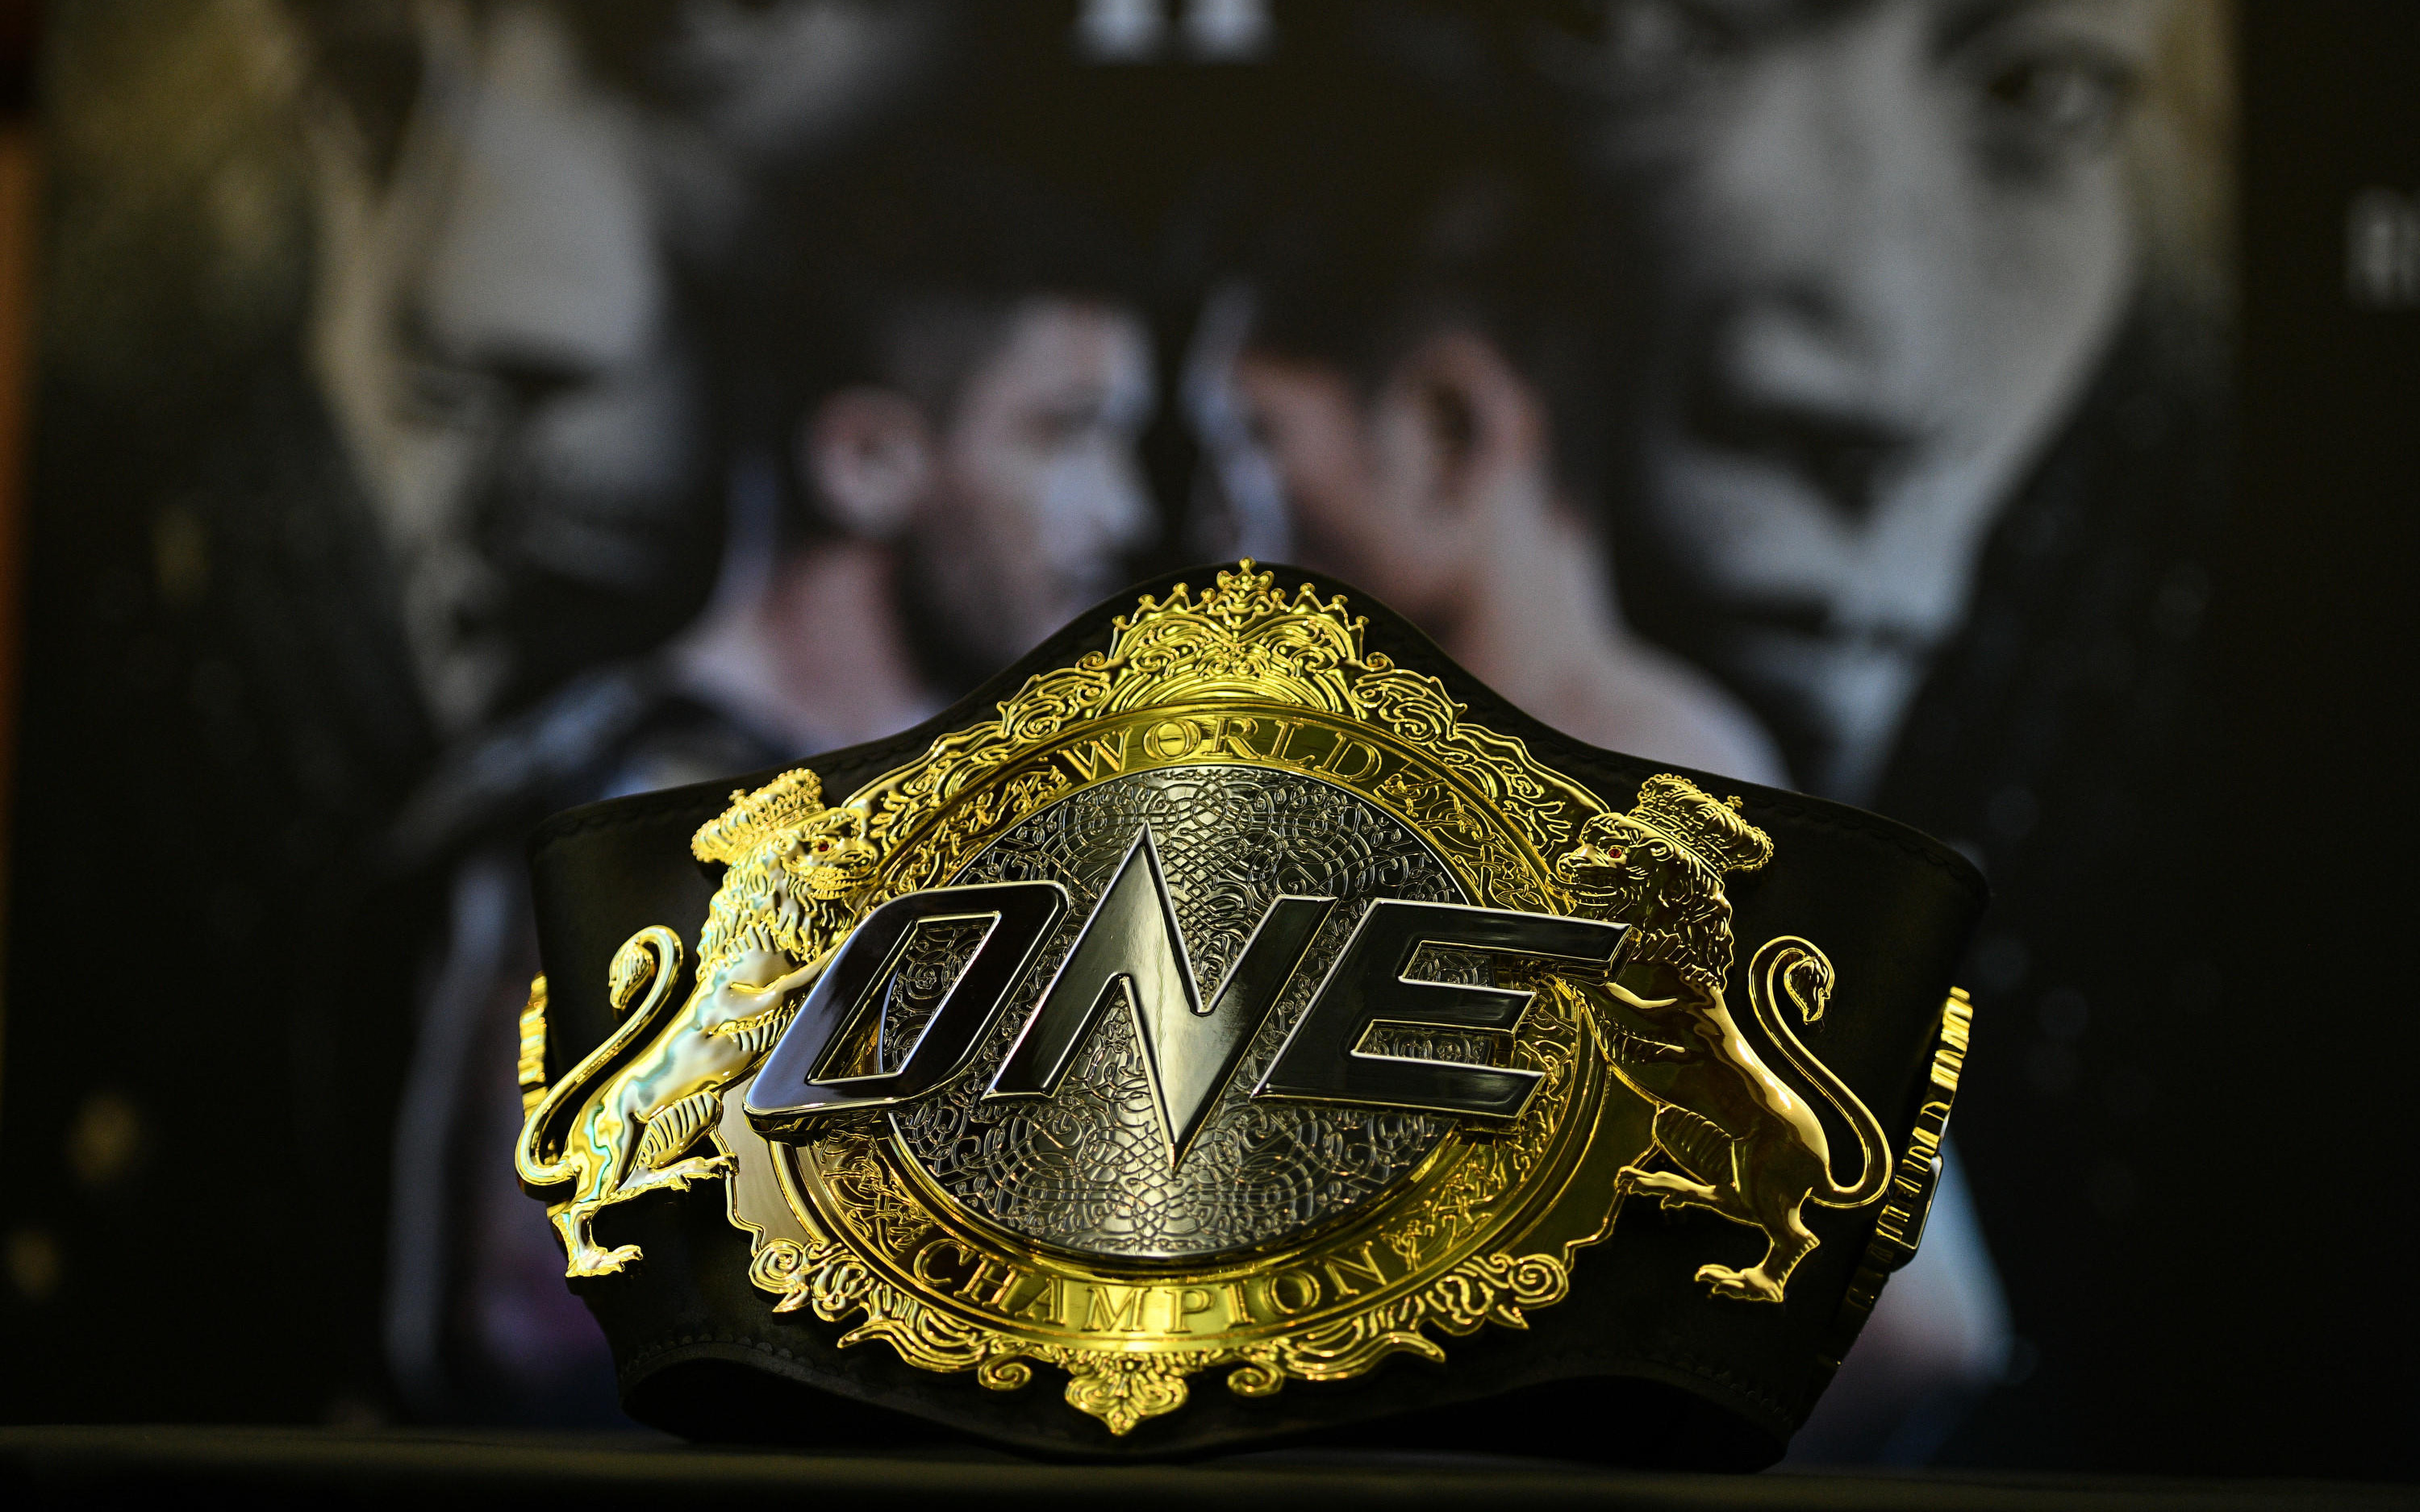 ONE Championship trở thành đối tác của hàng loạt thương hiệu lớn, thúc đẩy sự phát triển của mảng võ thuật và Esports